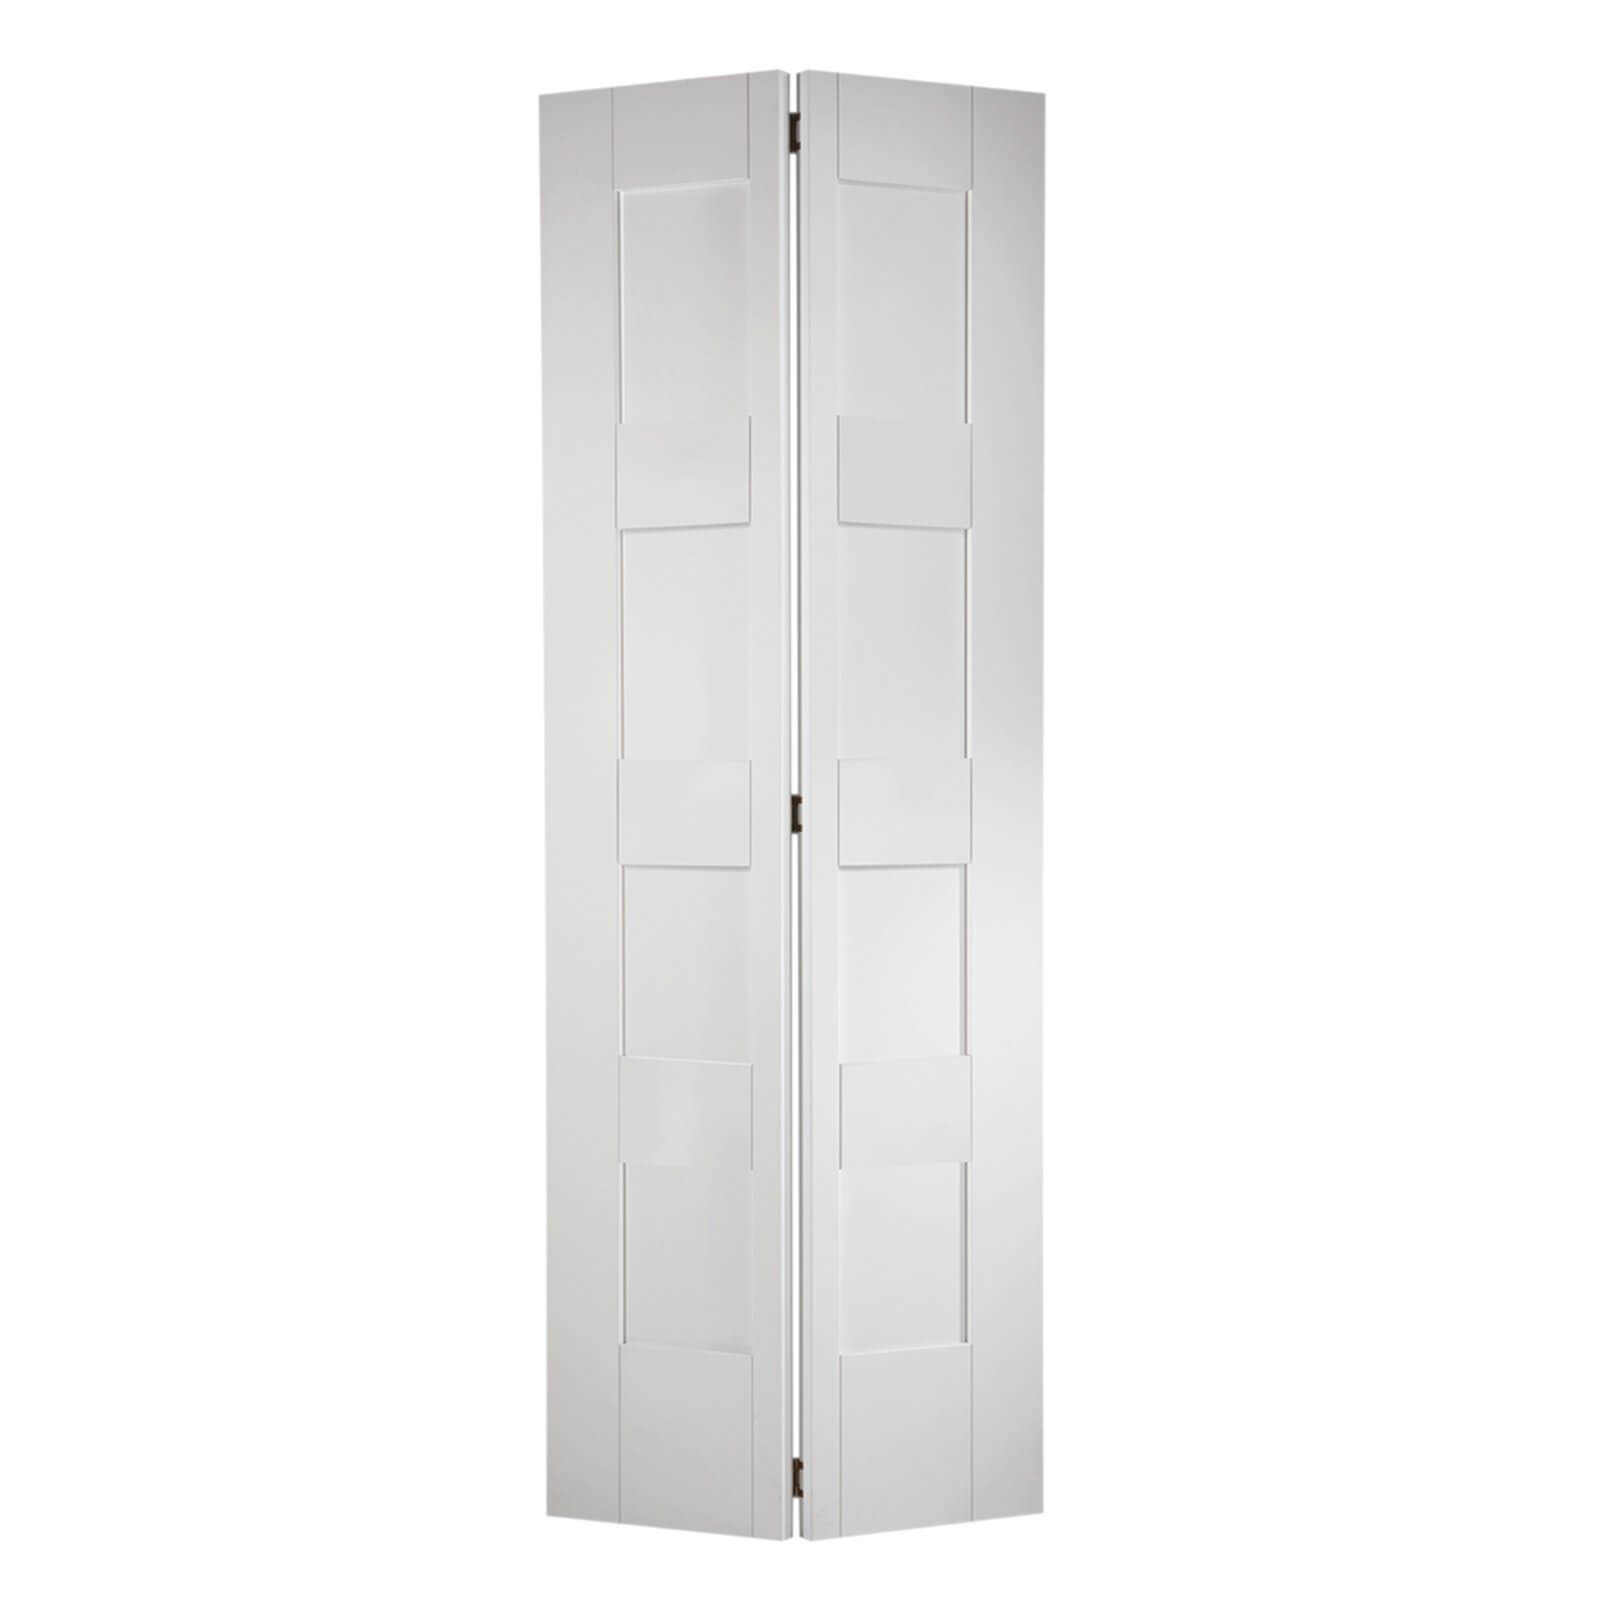 Shaker Internal Bi-fold Primed White 8 Panel Door - 762 x 1981mm